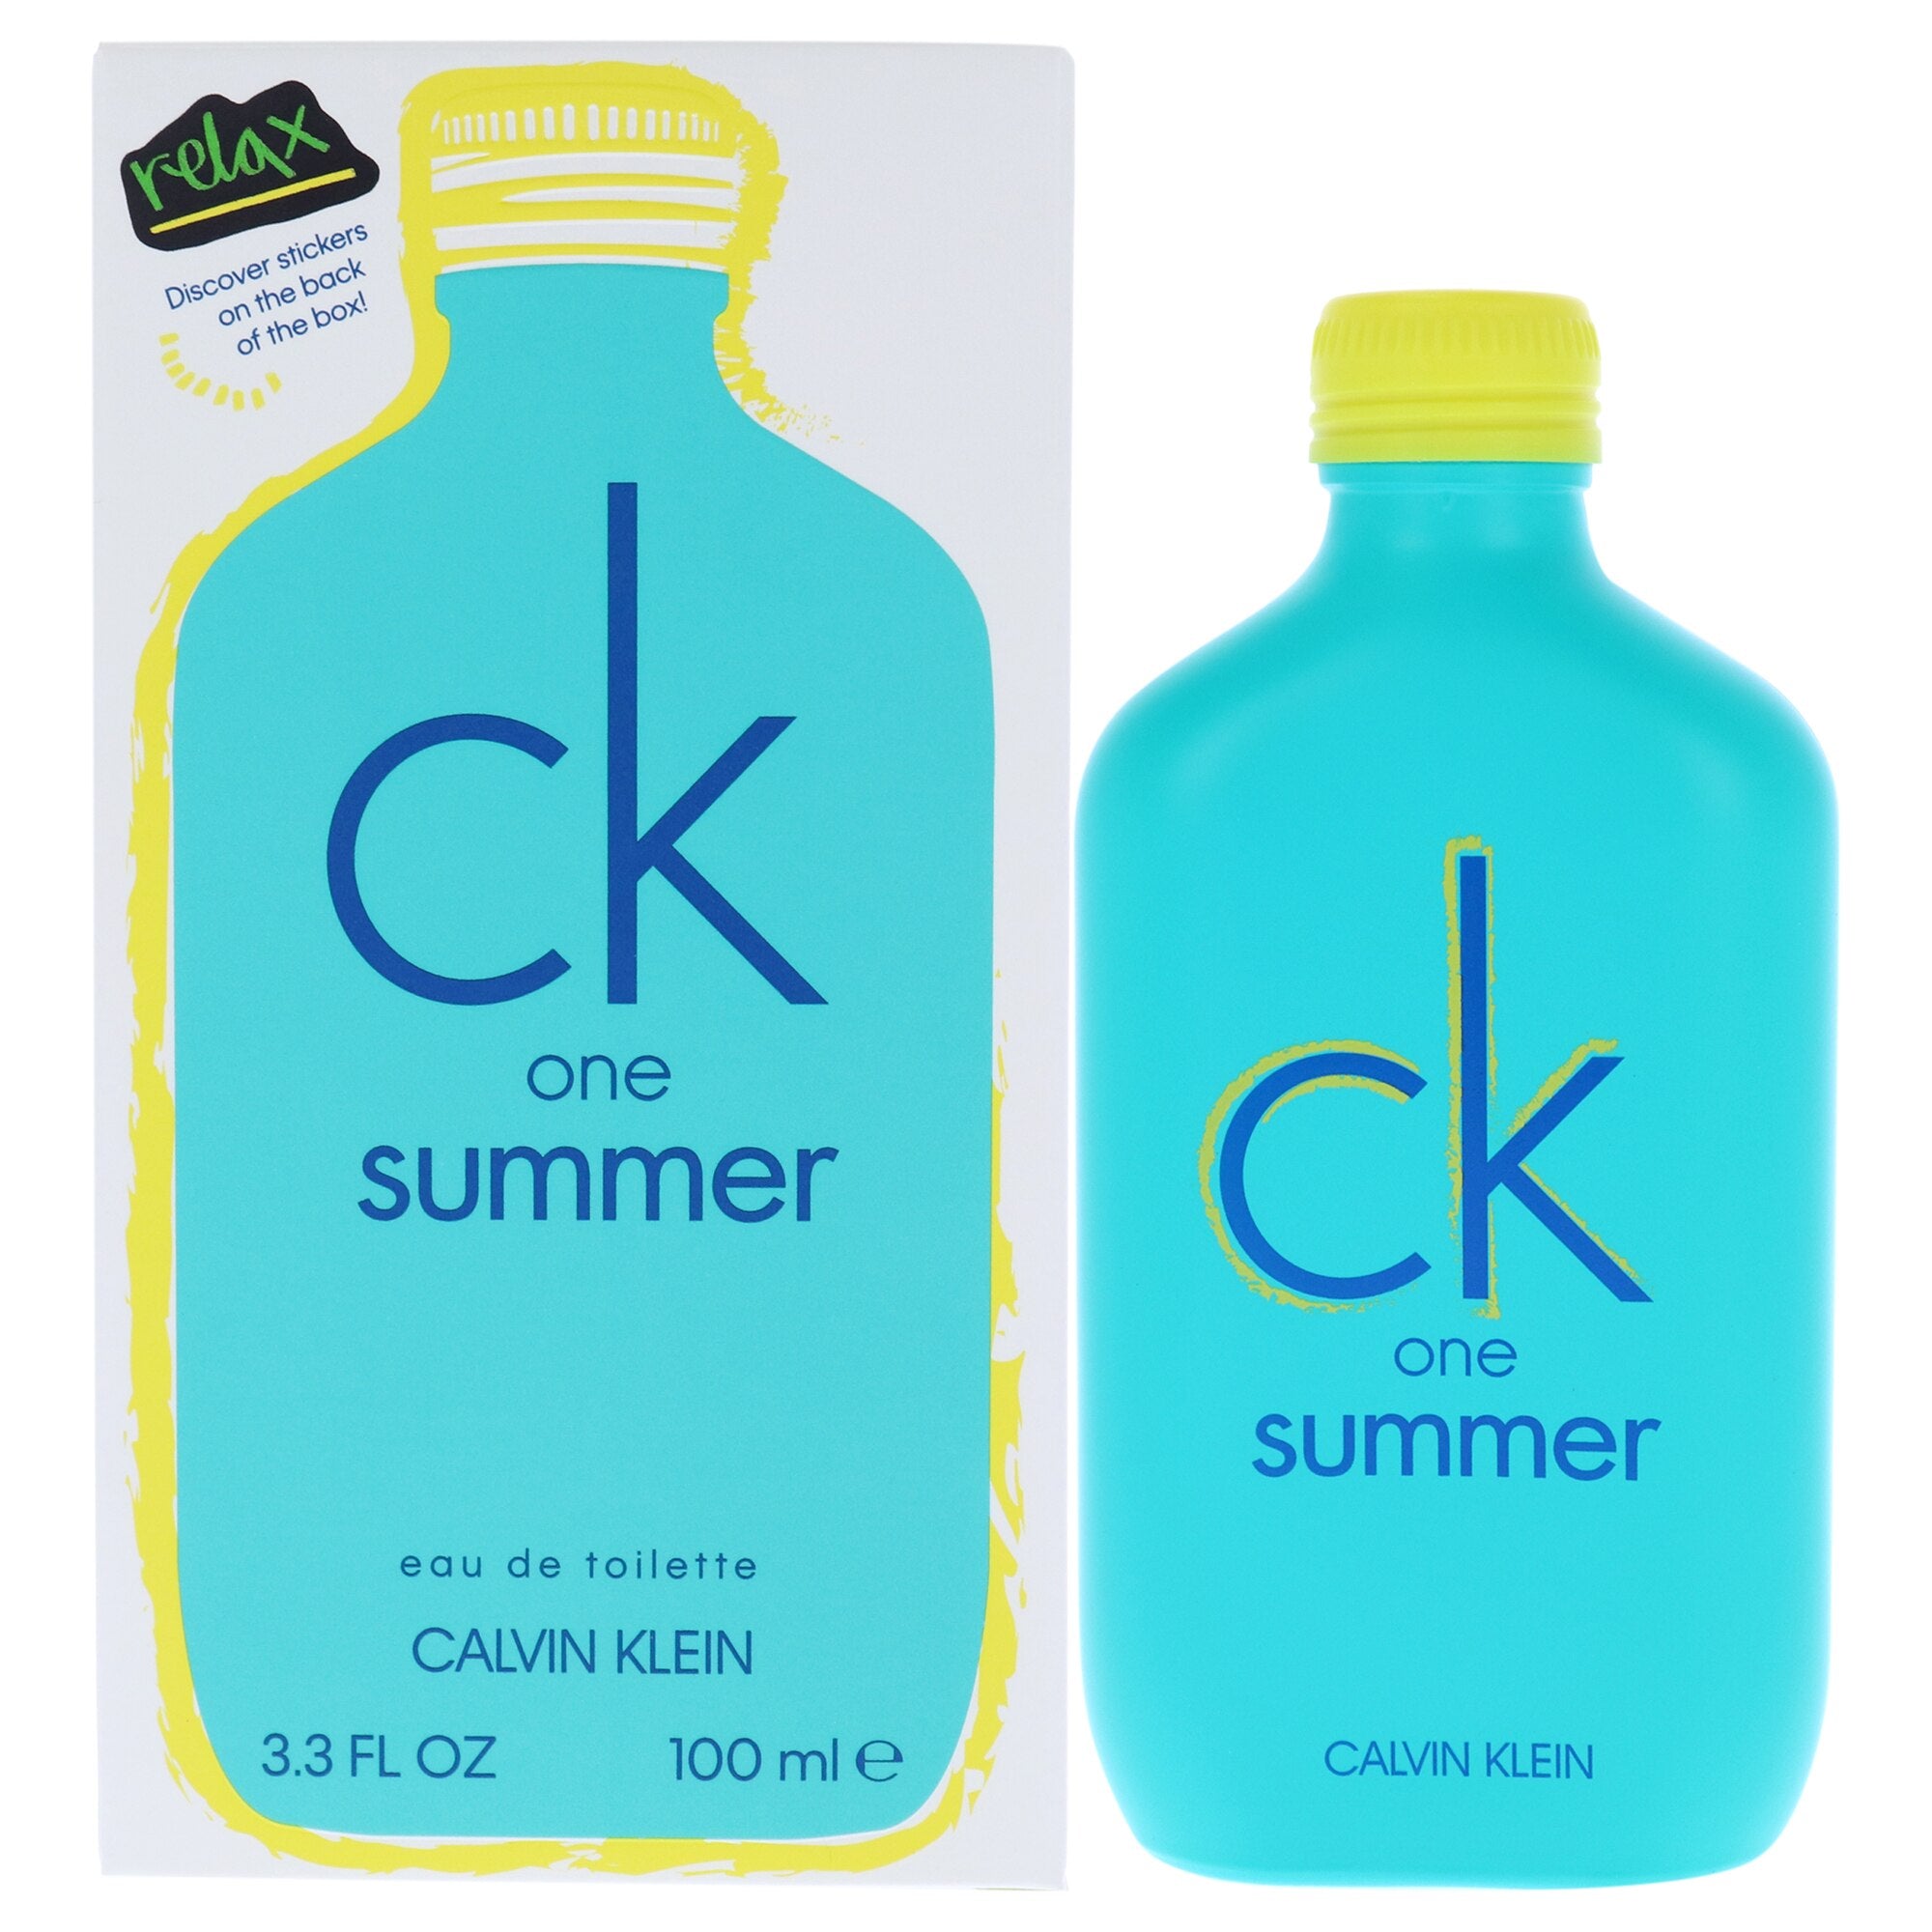 CK One Summer 2020 by Calvin Klein, 3.3 oz EDT Spray for Unisex